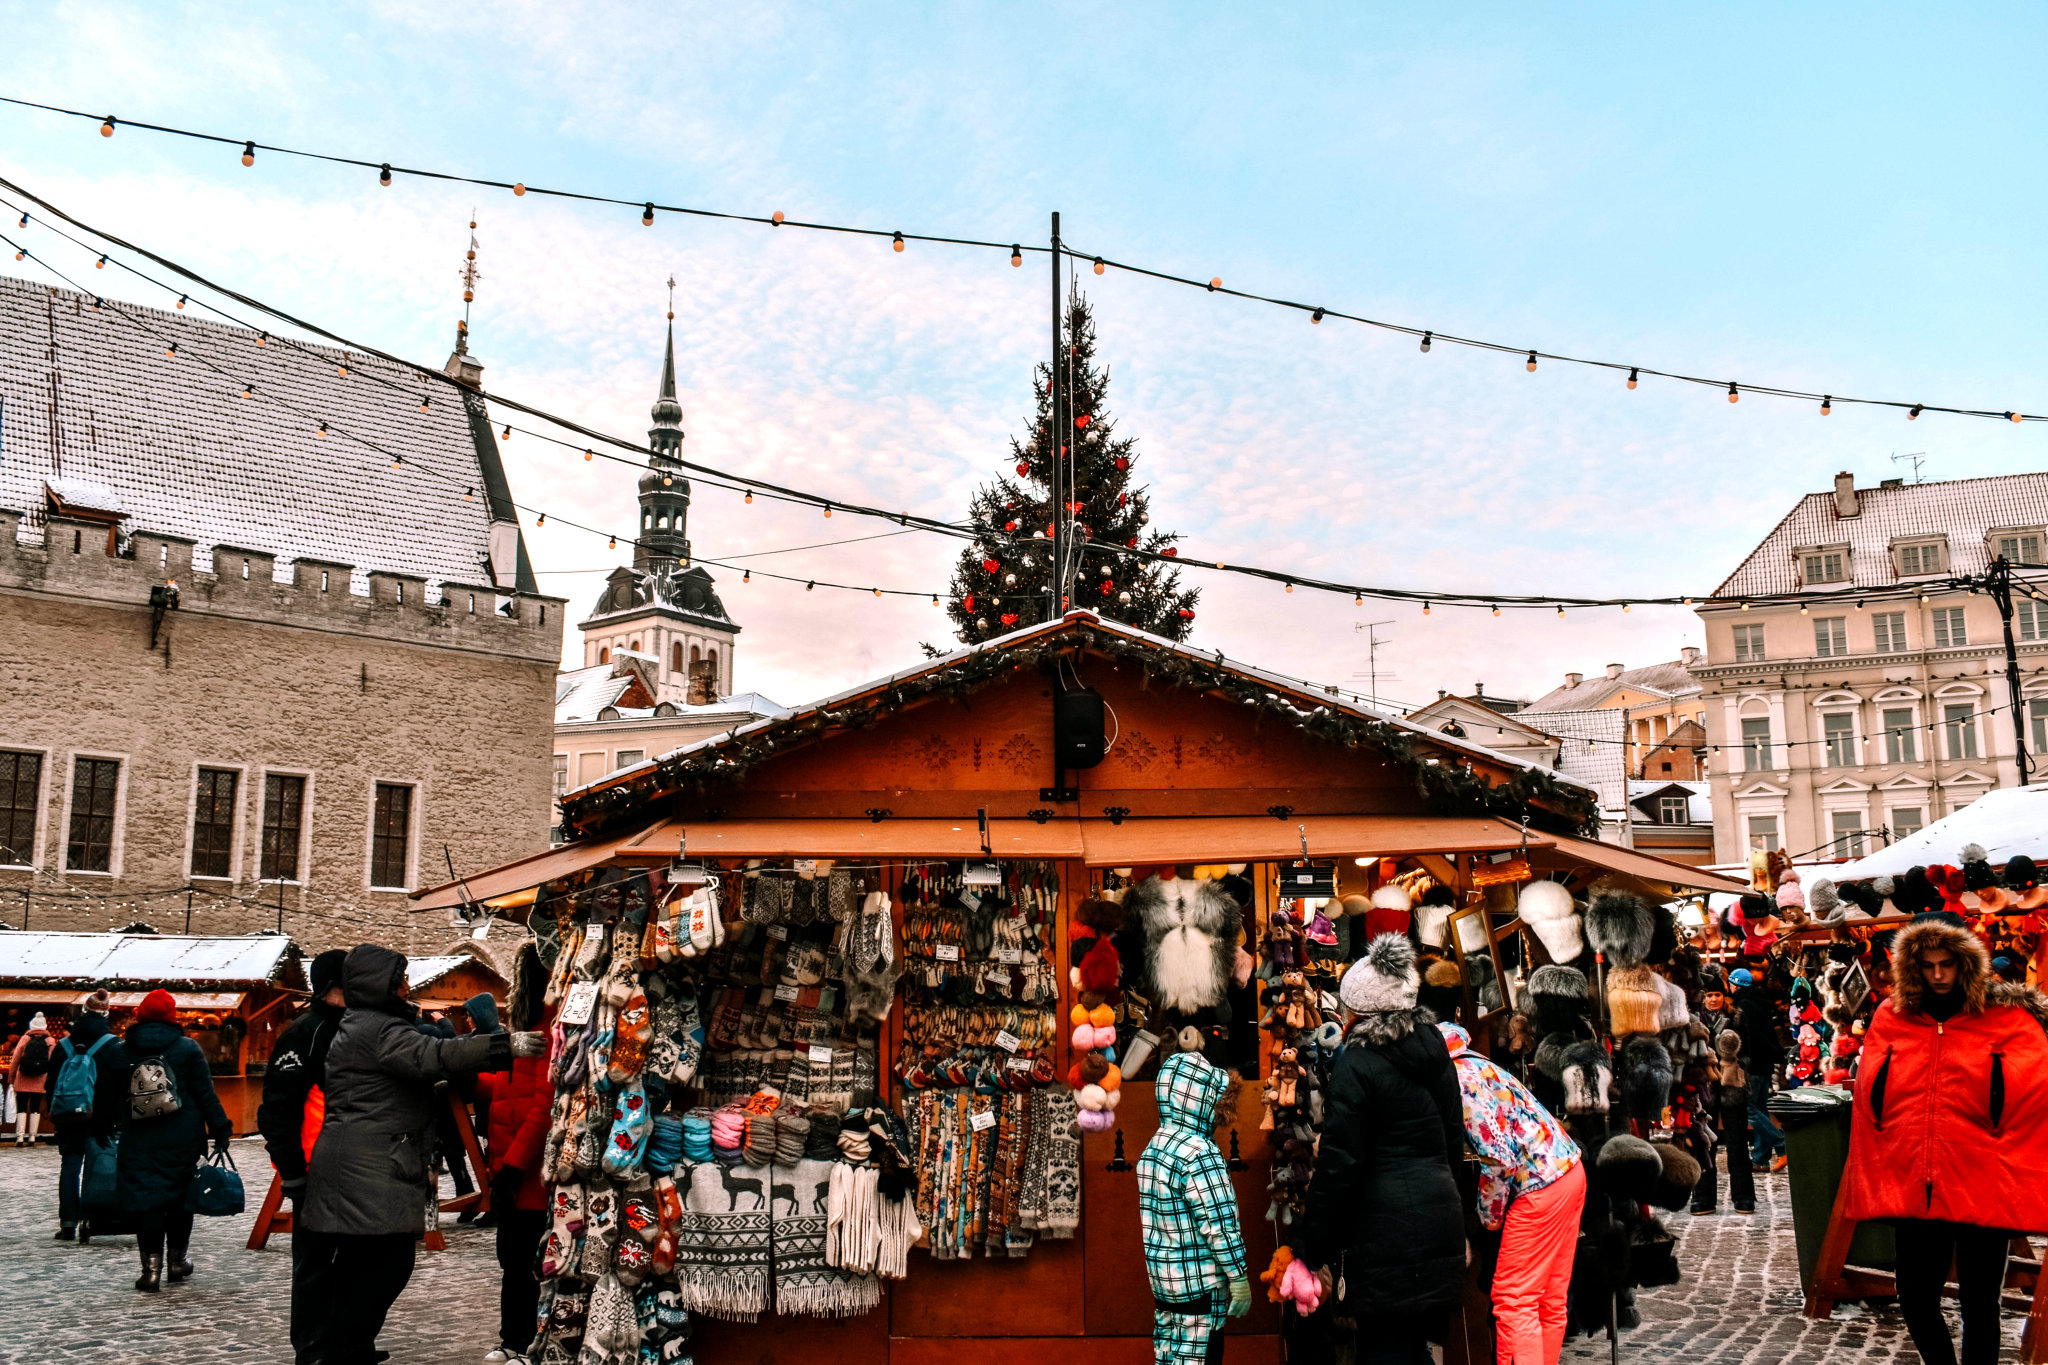 Варежки, войлочные пинетки и другие аксессуары из козьей шерсти ручной работы, можно приобрести на таллинском рождественском базаре